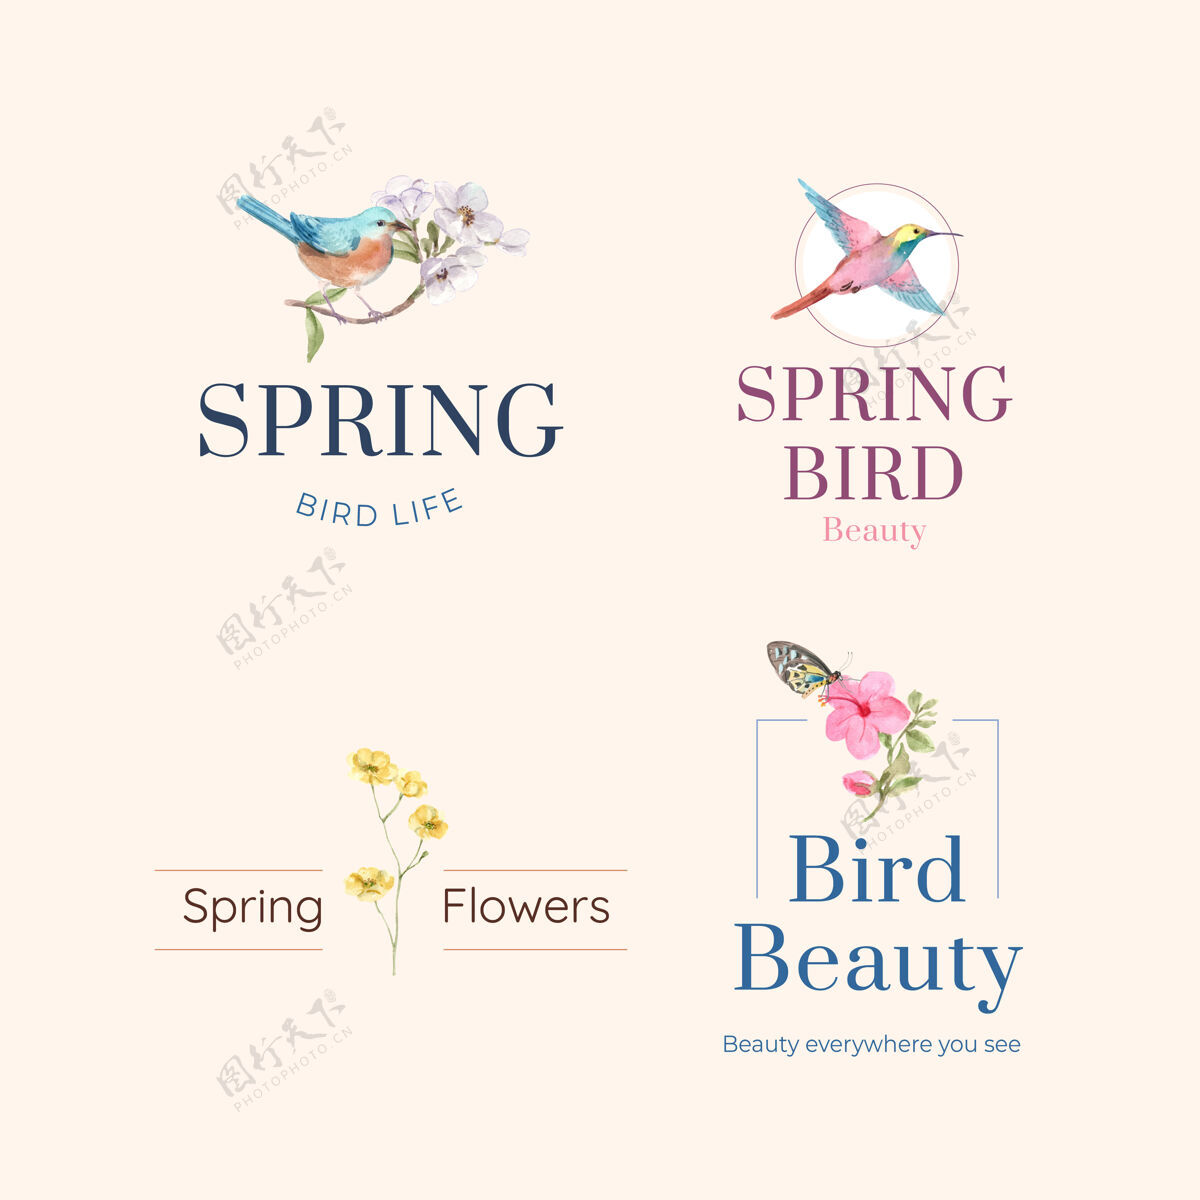 植物标志设计与鸟类和春天的概念品牌春天美丽